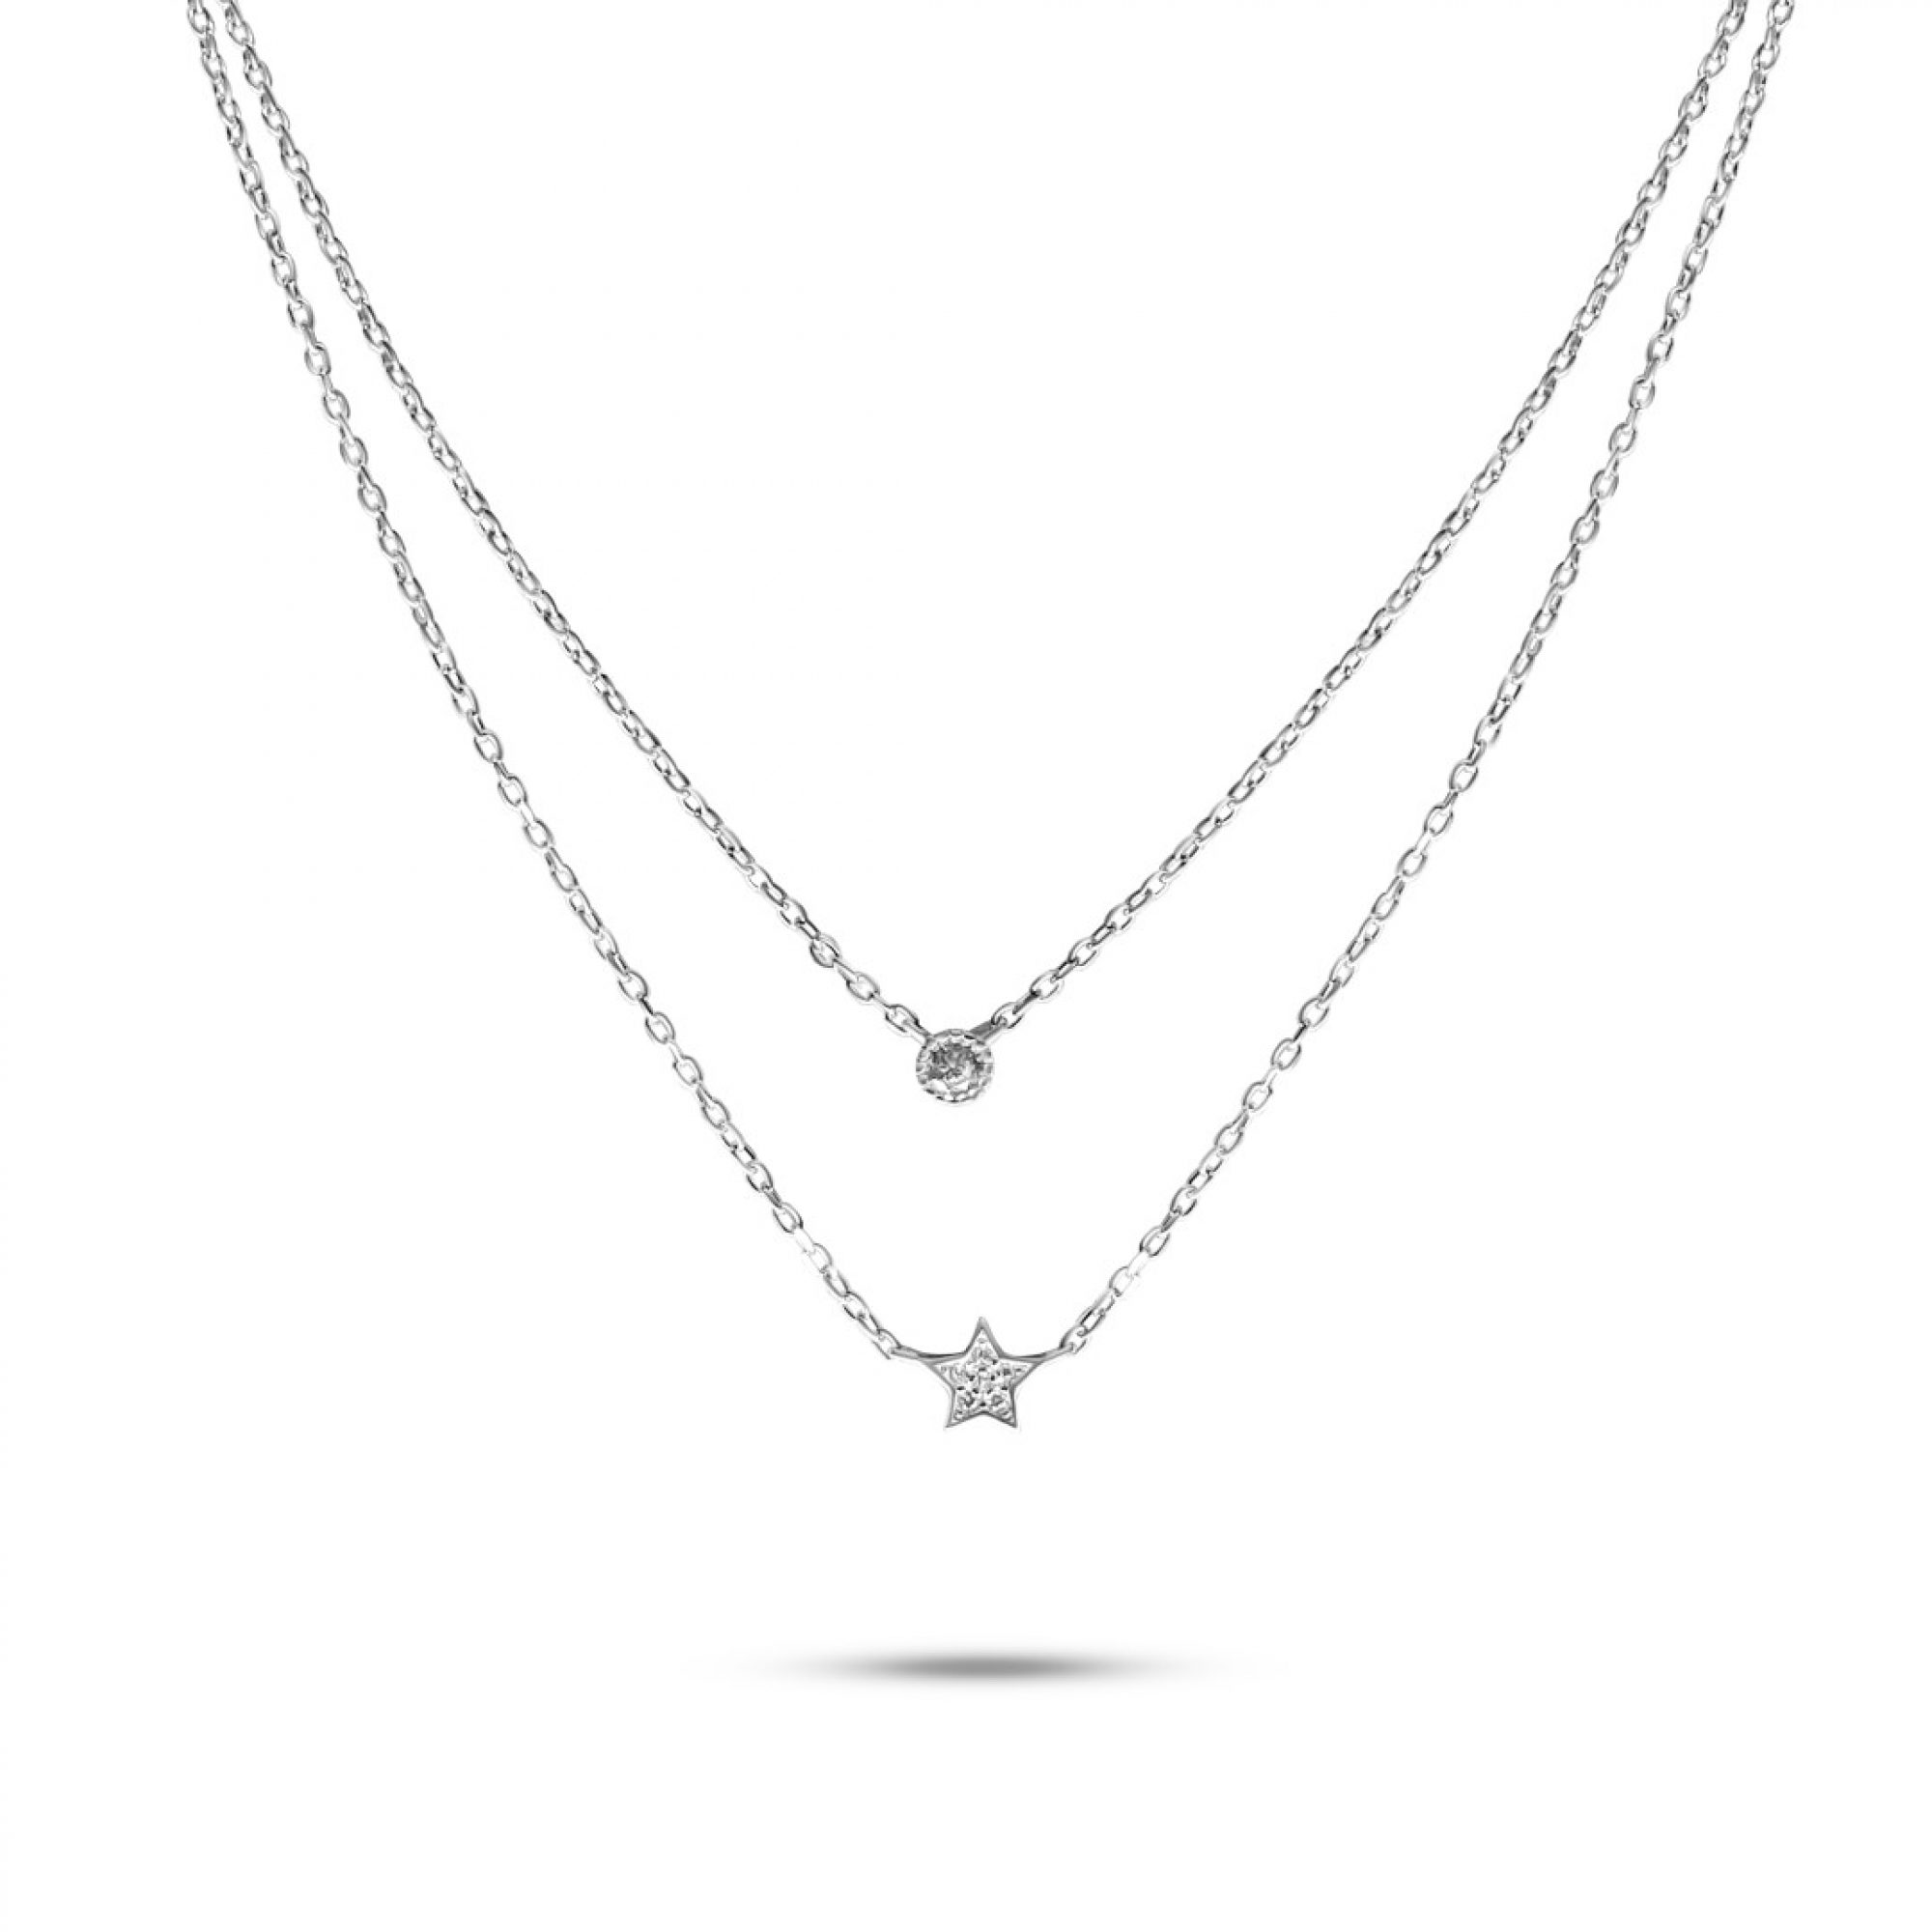 Double necklace with zircon stones